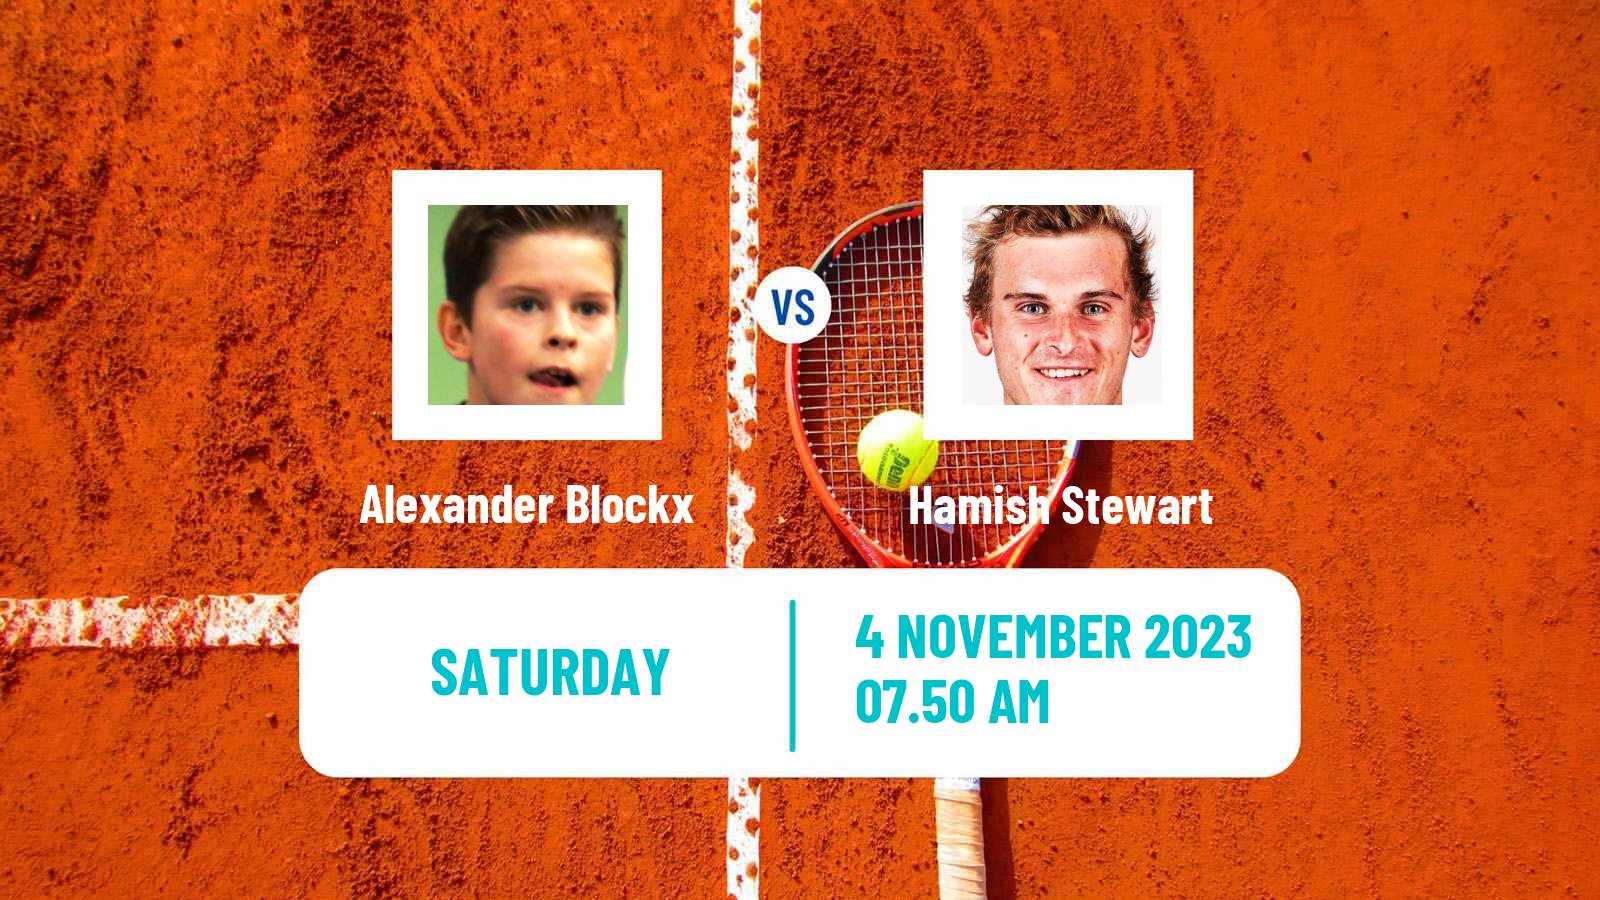 Tennis ITF M25 Sunderland 2 Men Alexander Blockx - Hamish Stewart